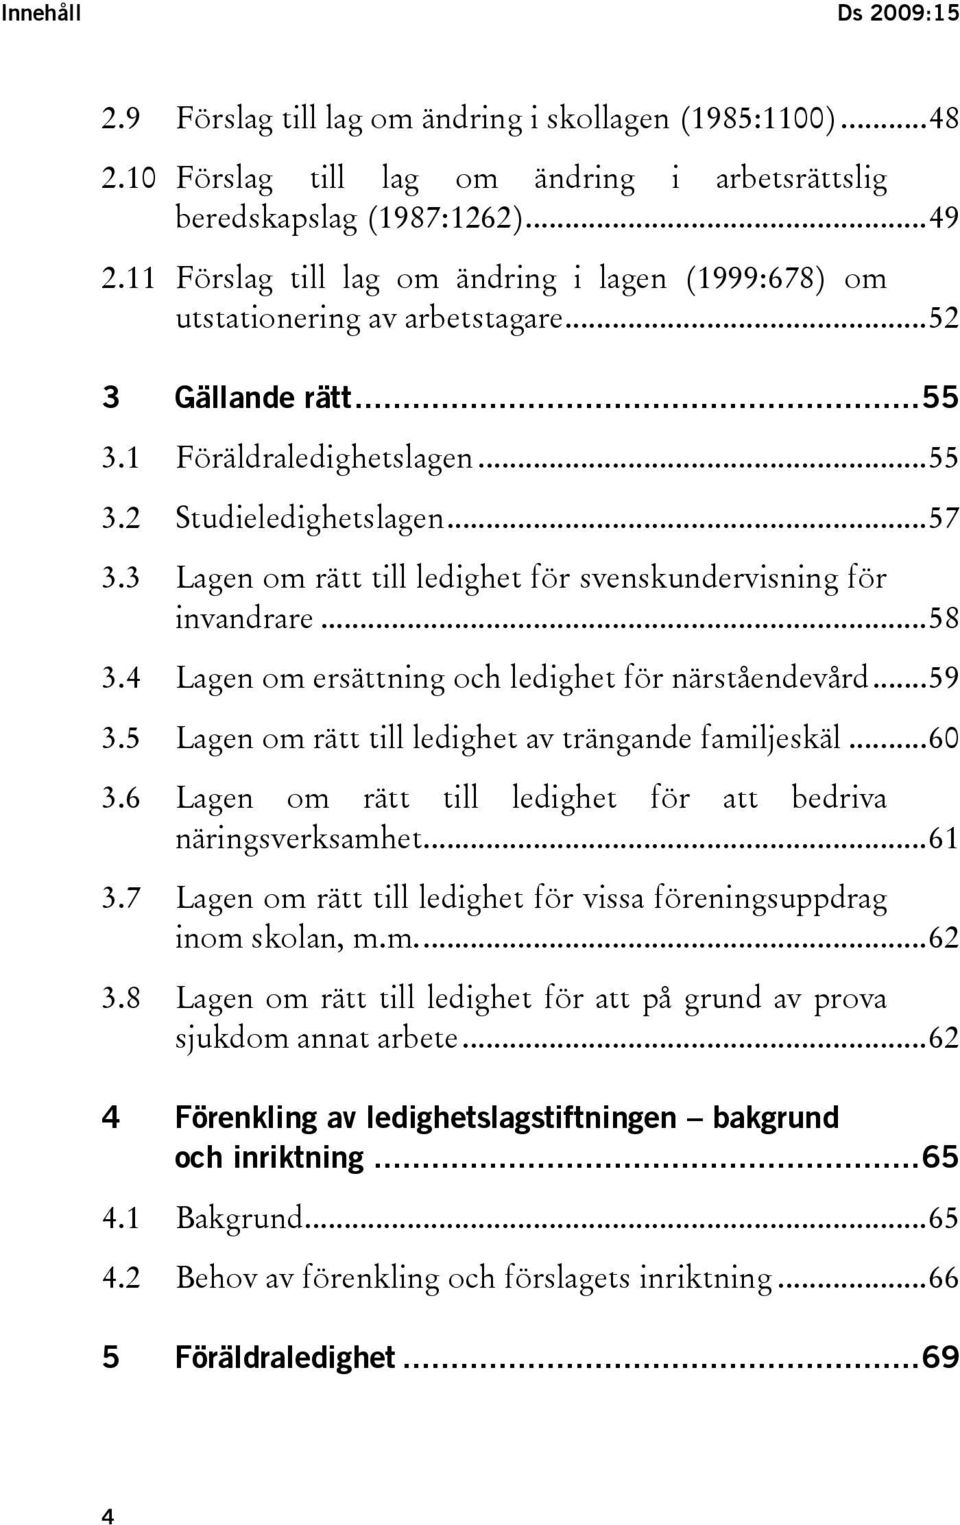 3 Lagen om rätt till ledighet för svenskundervisning för invandrare...58 3.4 Lagen om ersättning och ledighet för närståendevård...59 3.5 Lagen om rätt till ledighet av trängande familjeskäl...60 3.